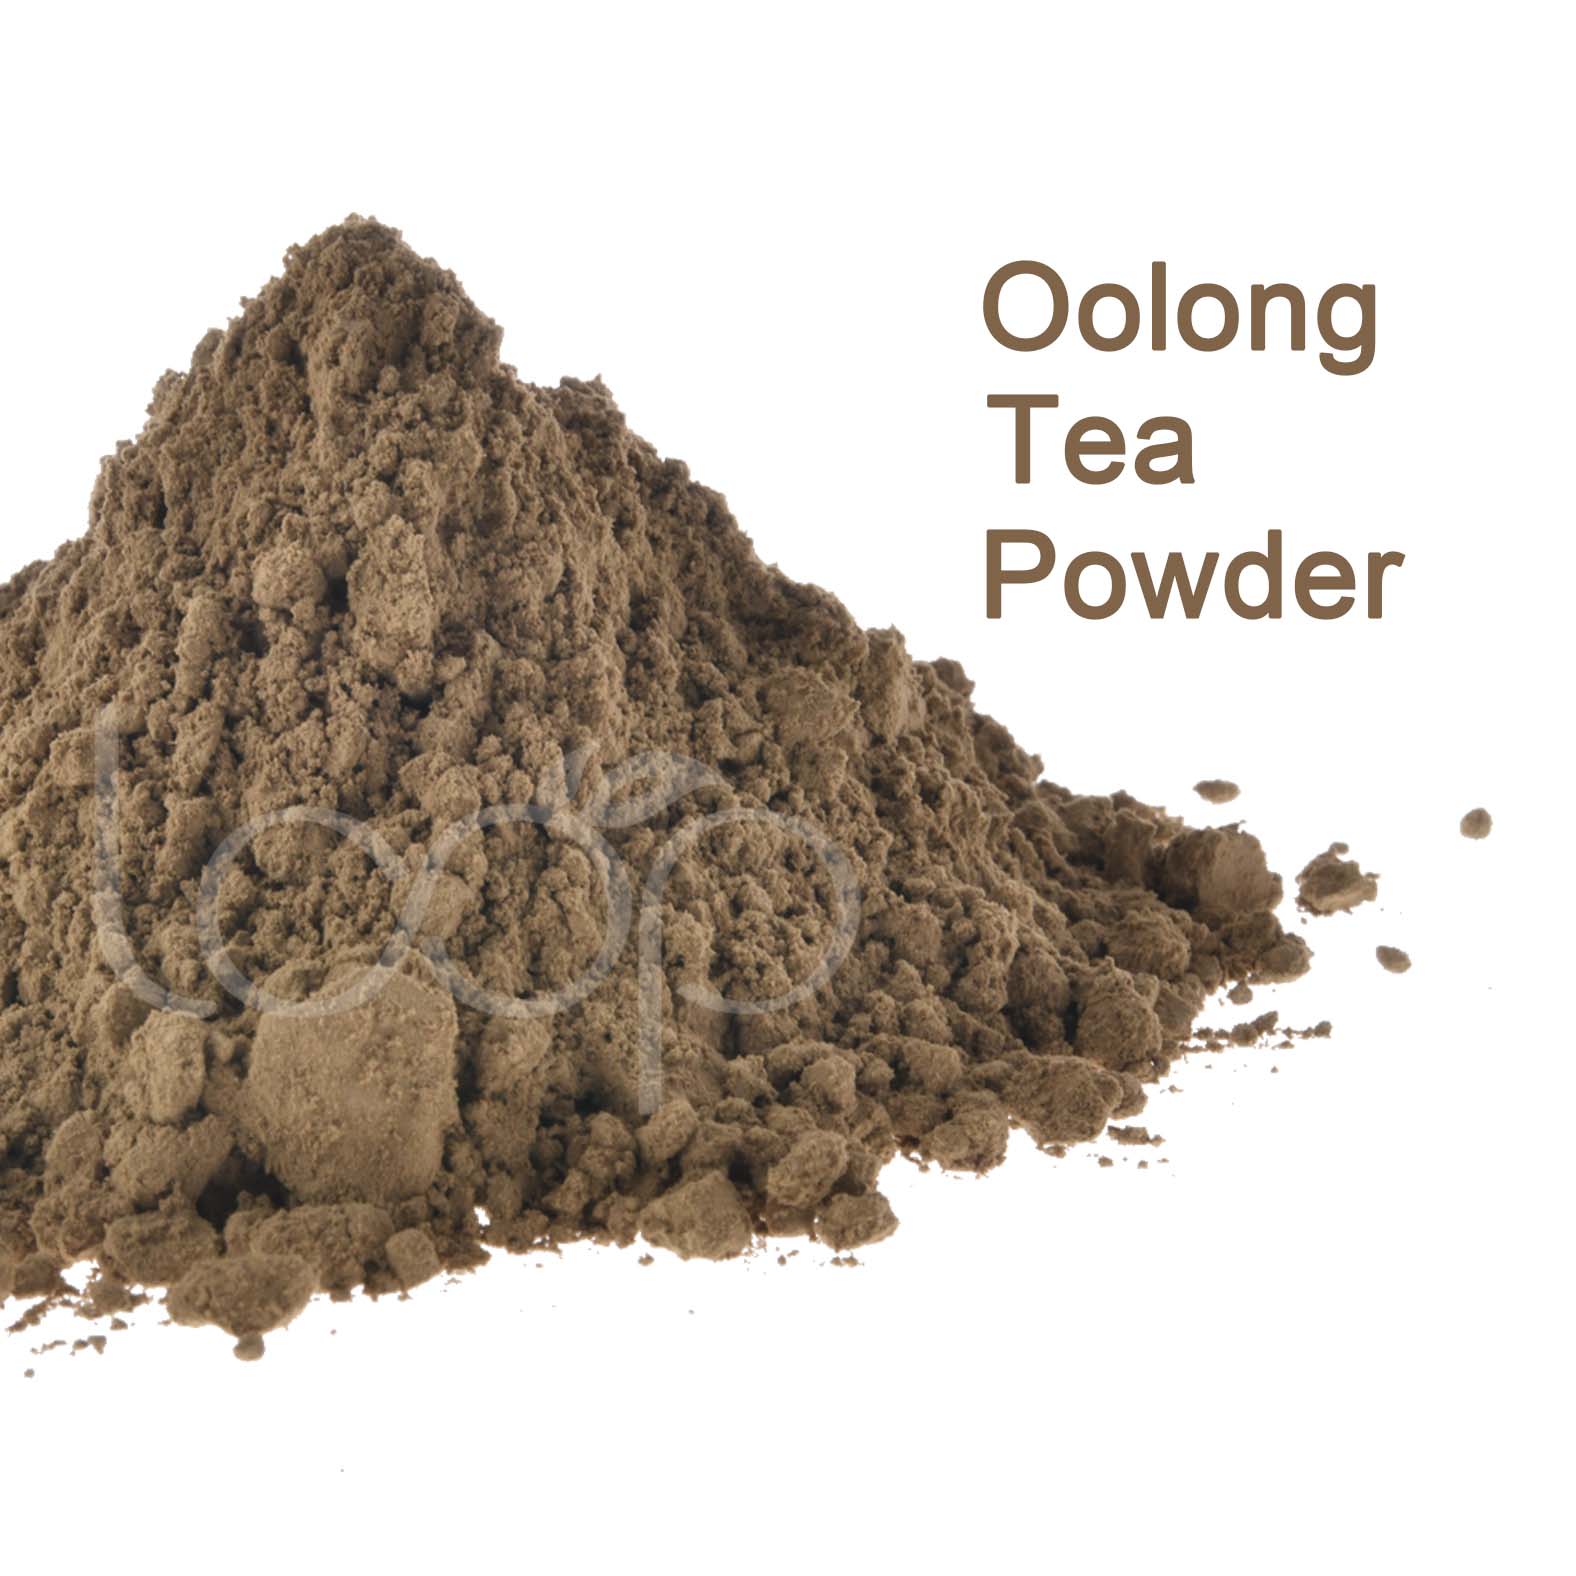 Oolong Tea Powder from China Wulong